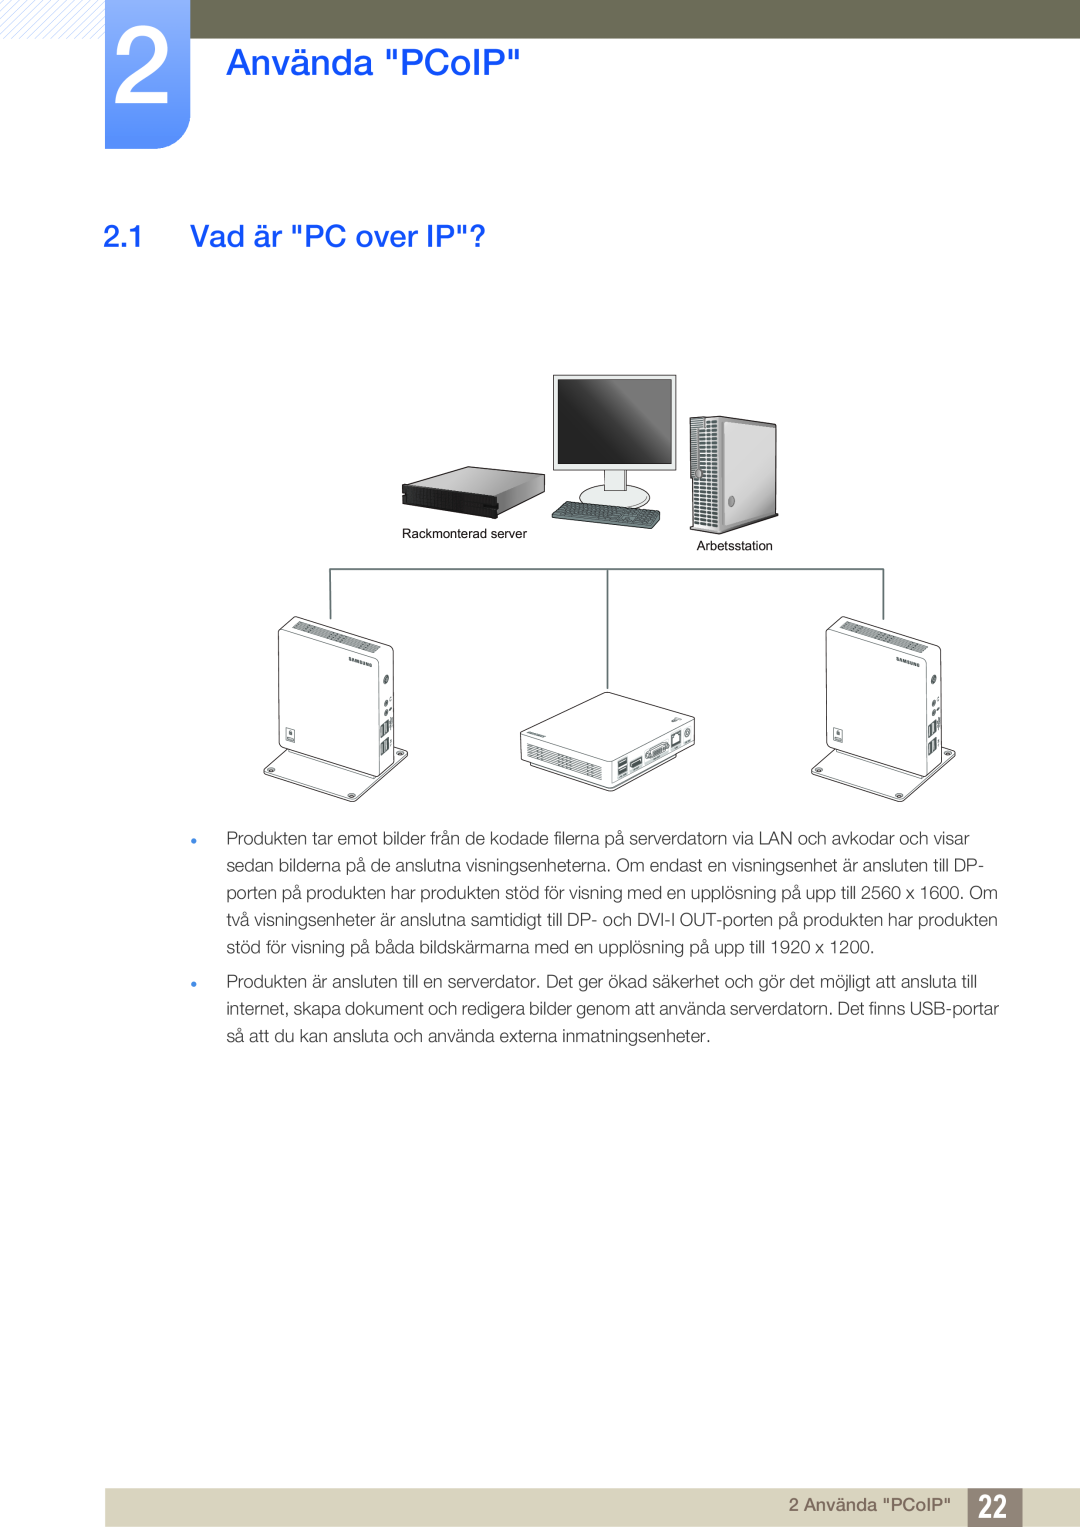 Samsung LF-NXN2N/EN, LF00FNXPFBZXEN manual 2 Använda PCoIP, Vad är PC over IP? 